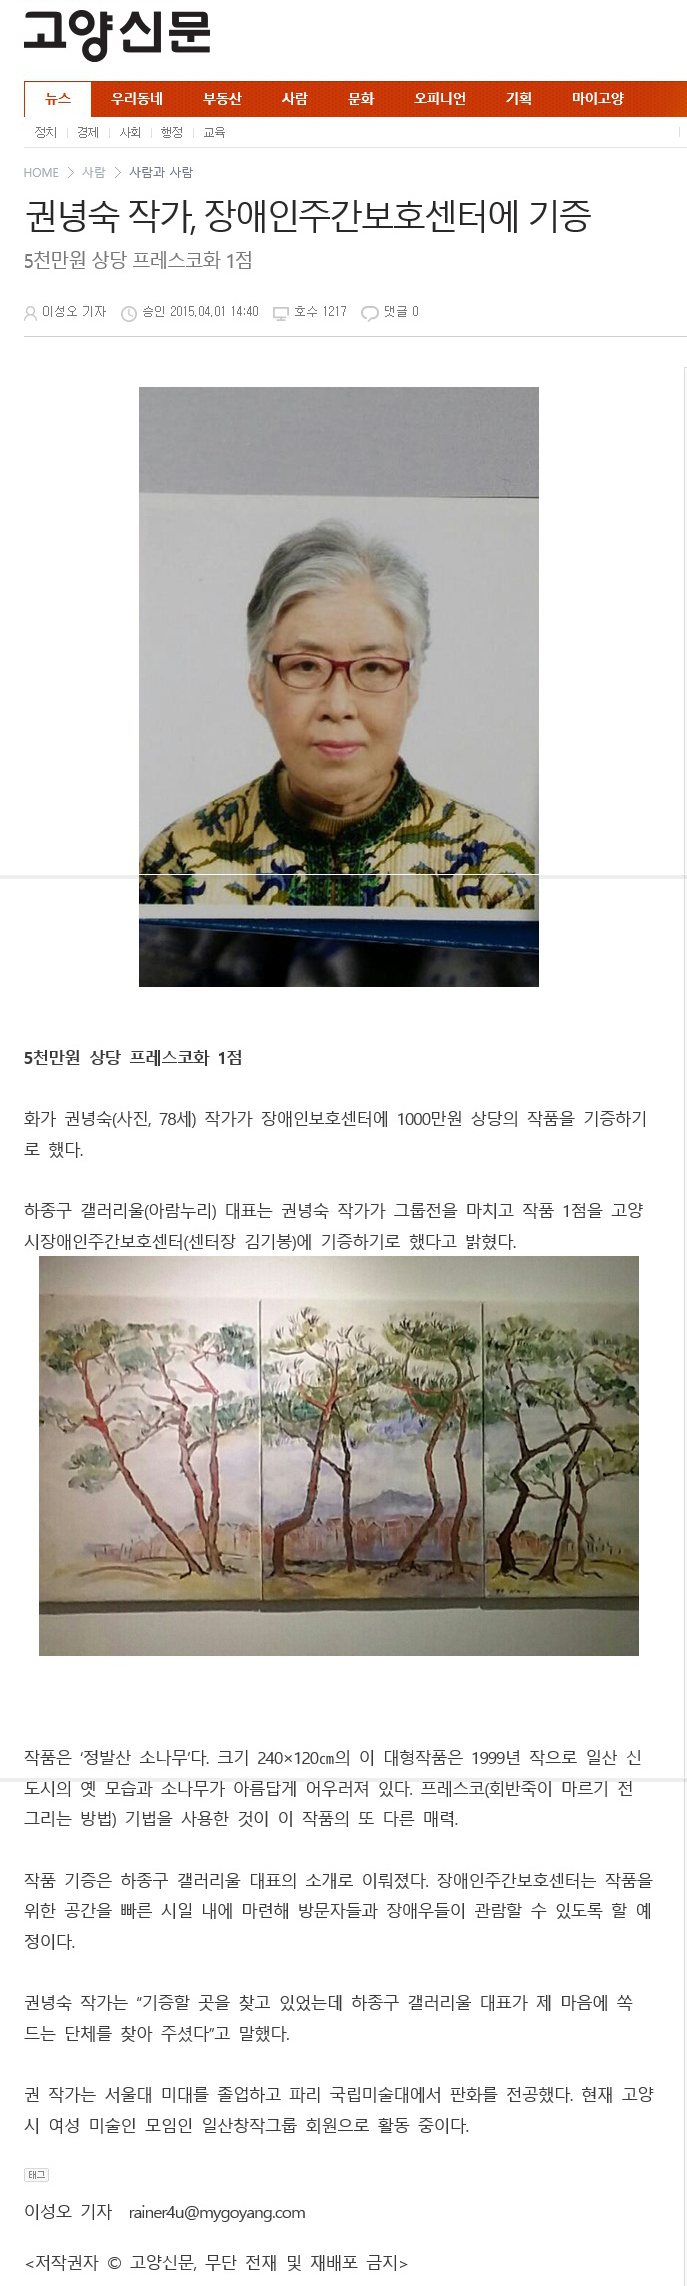 20150401_권녕숙 작가, 장애인주간보호센터에 기증(고양신문).jpg